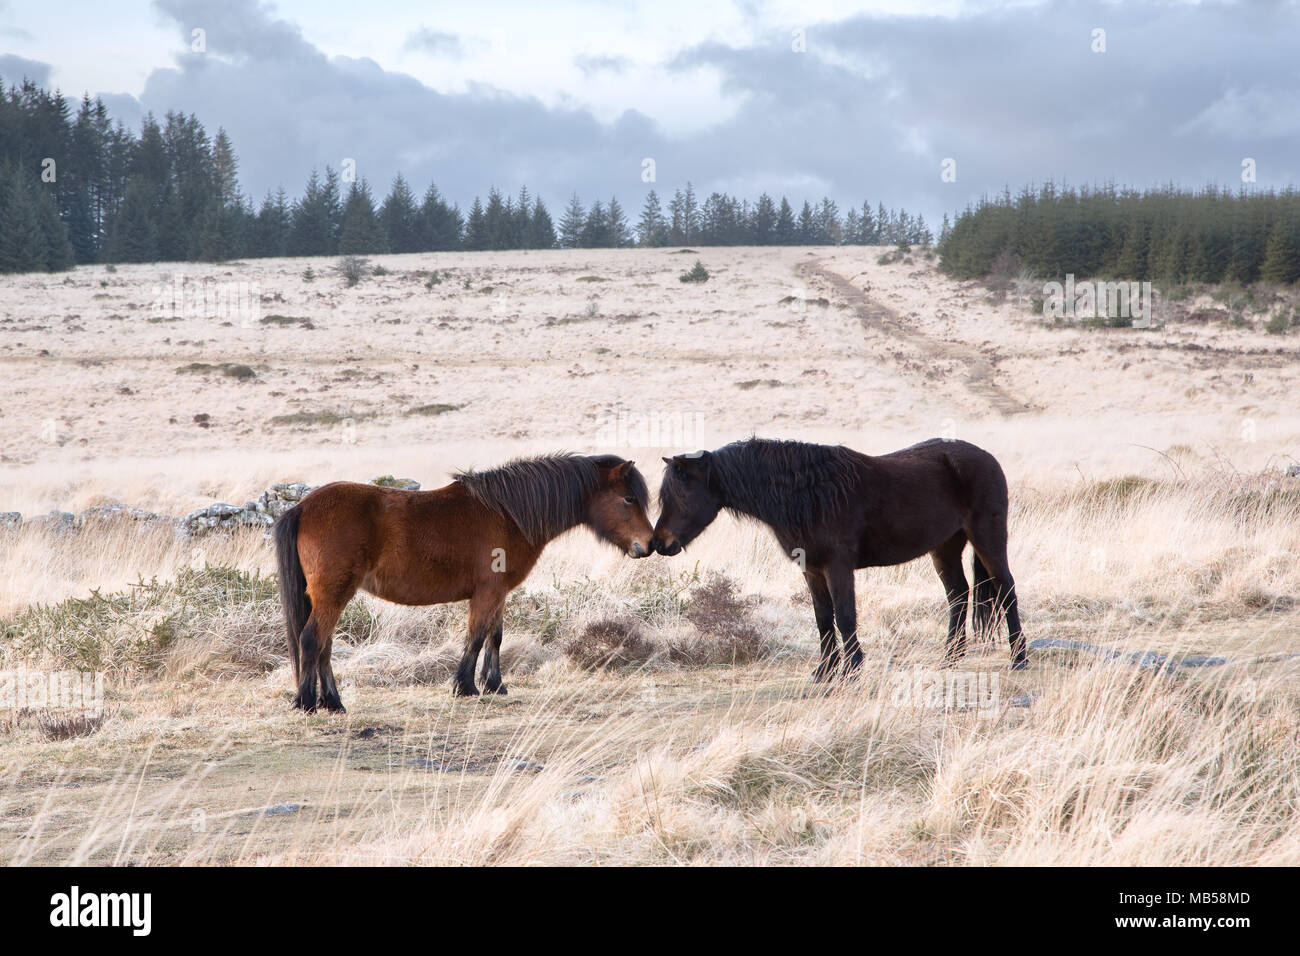 Two dartmoor ponies touching noses Dartmoor national park Devon uk Stock Photo